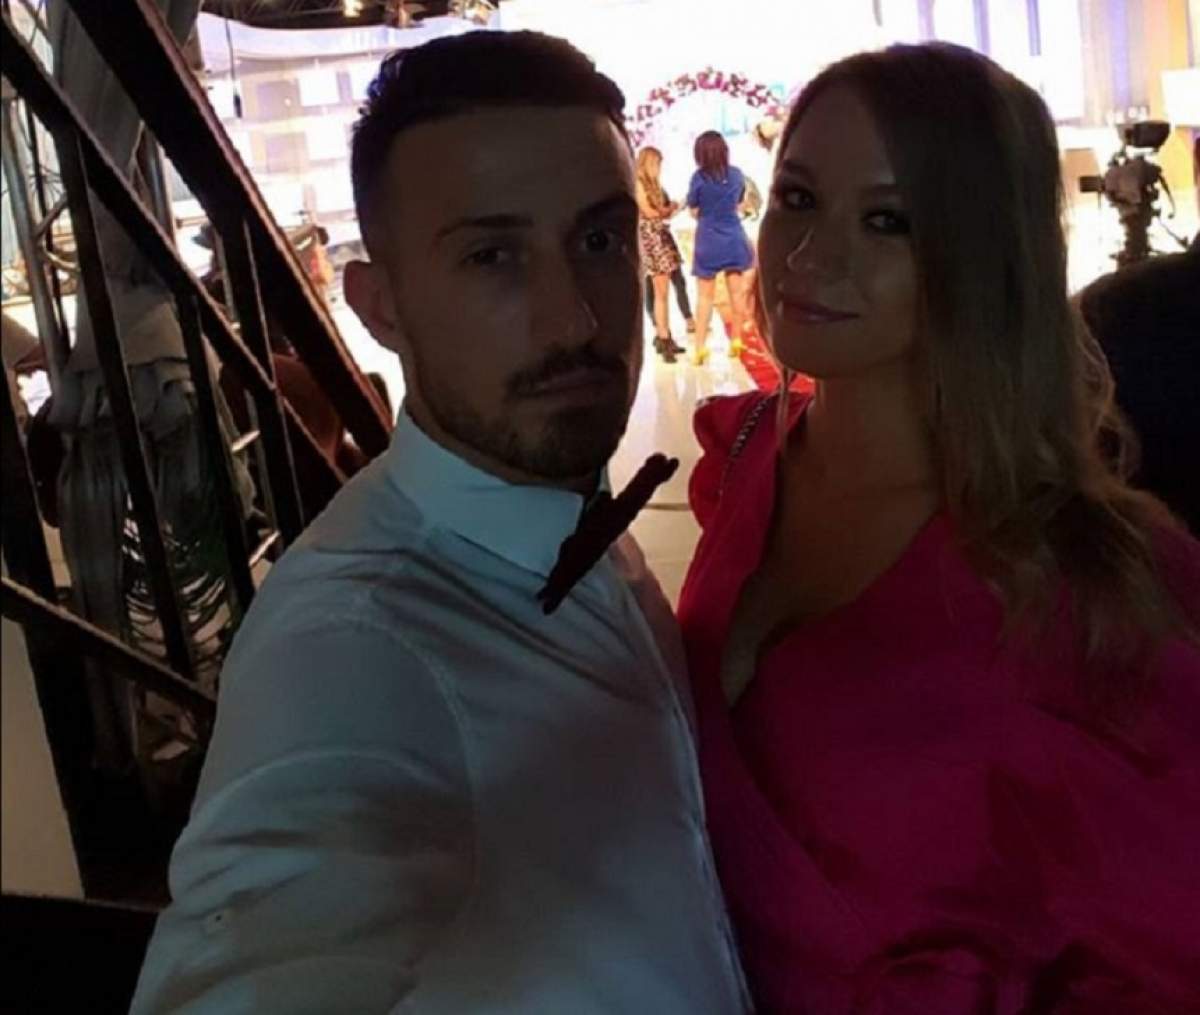 VIDEO / Laurenţiu, fost concurent la MPFM, pregăteşte mare nuntă cu iubita lui însărcinată! Ce rochie şi ce costum şi-au ales